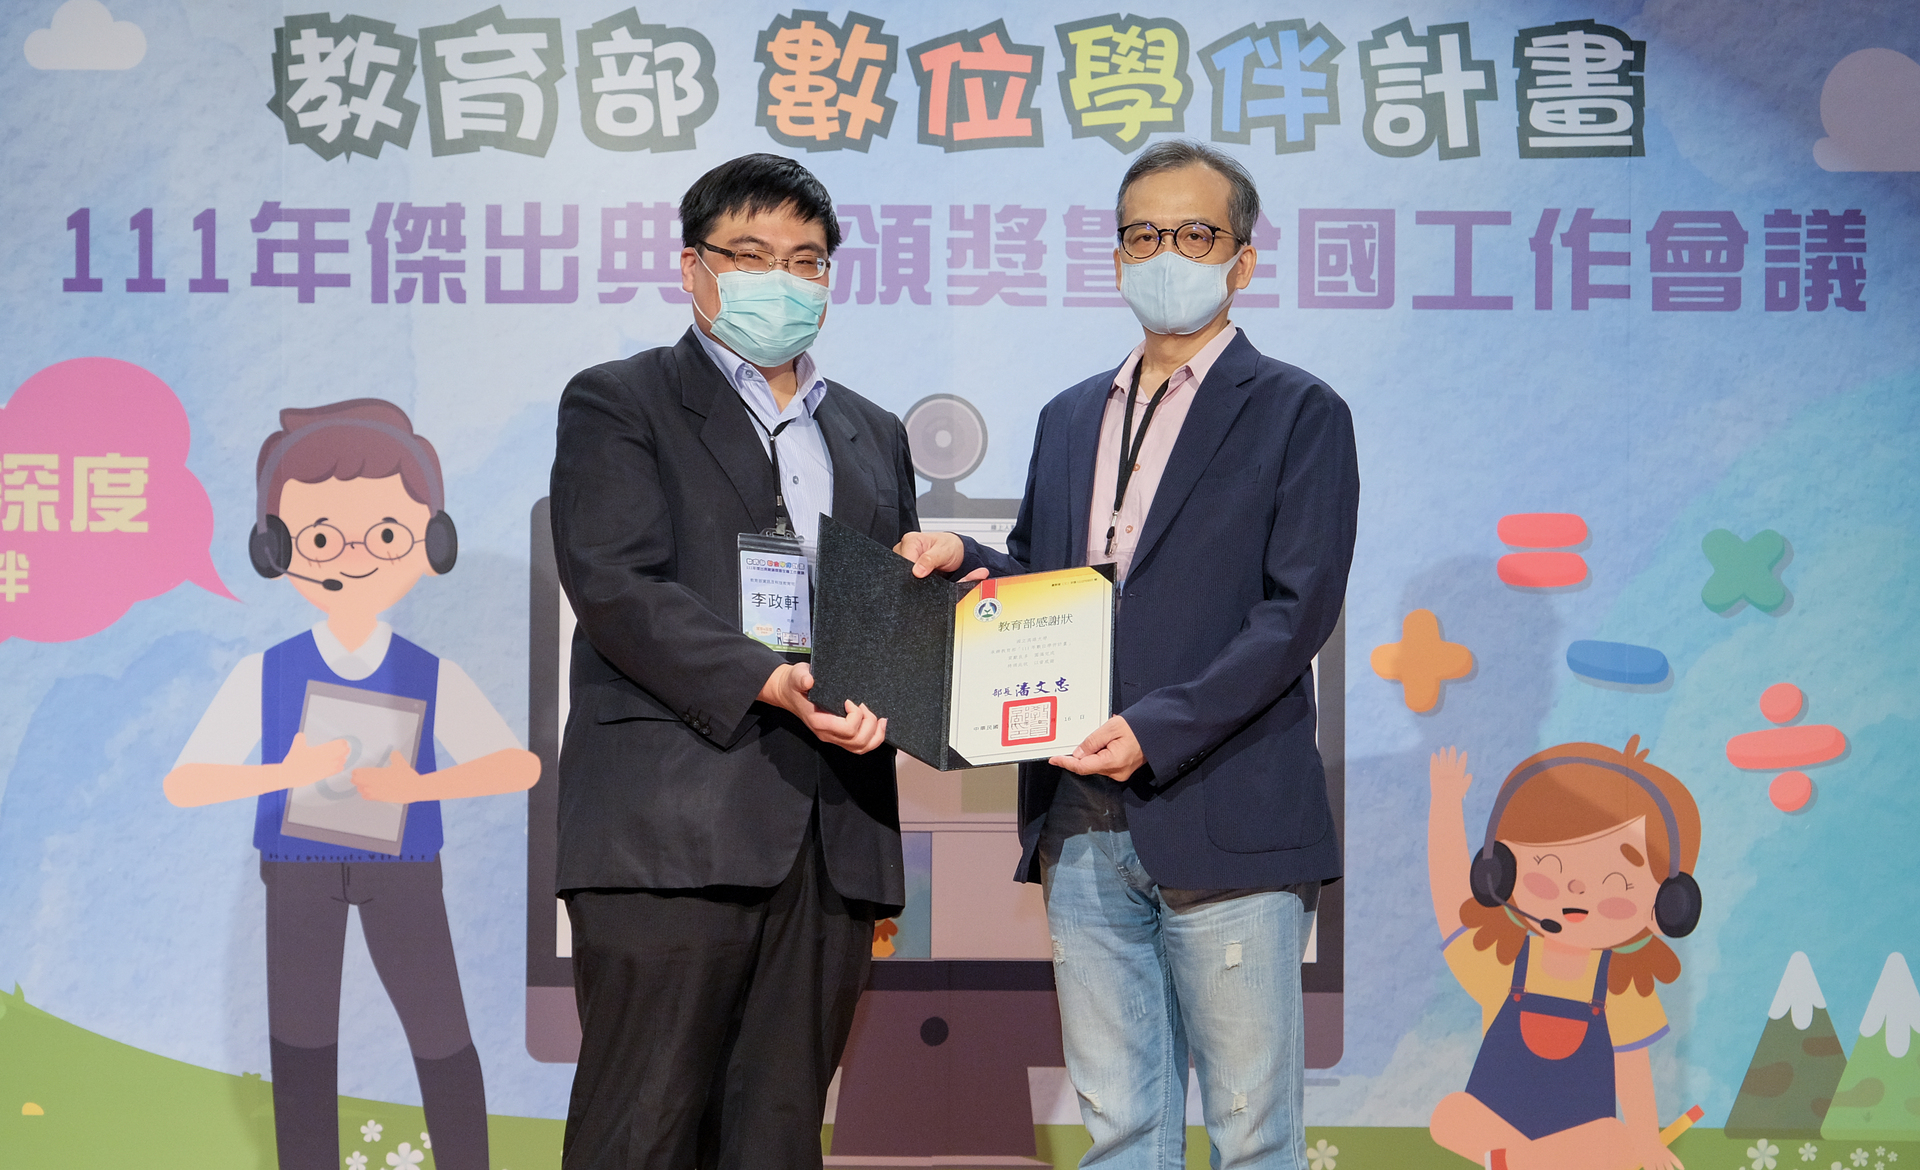 高雄大學數位學伴計畫共同主持人、電機工程學系教授吳志宏上台受獎